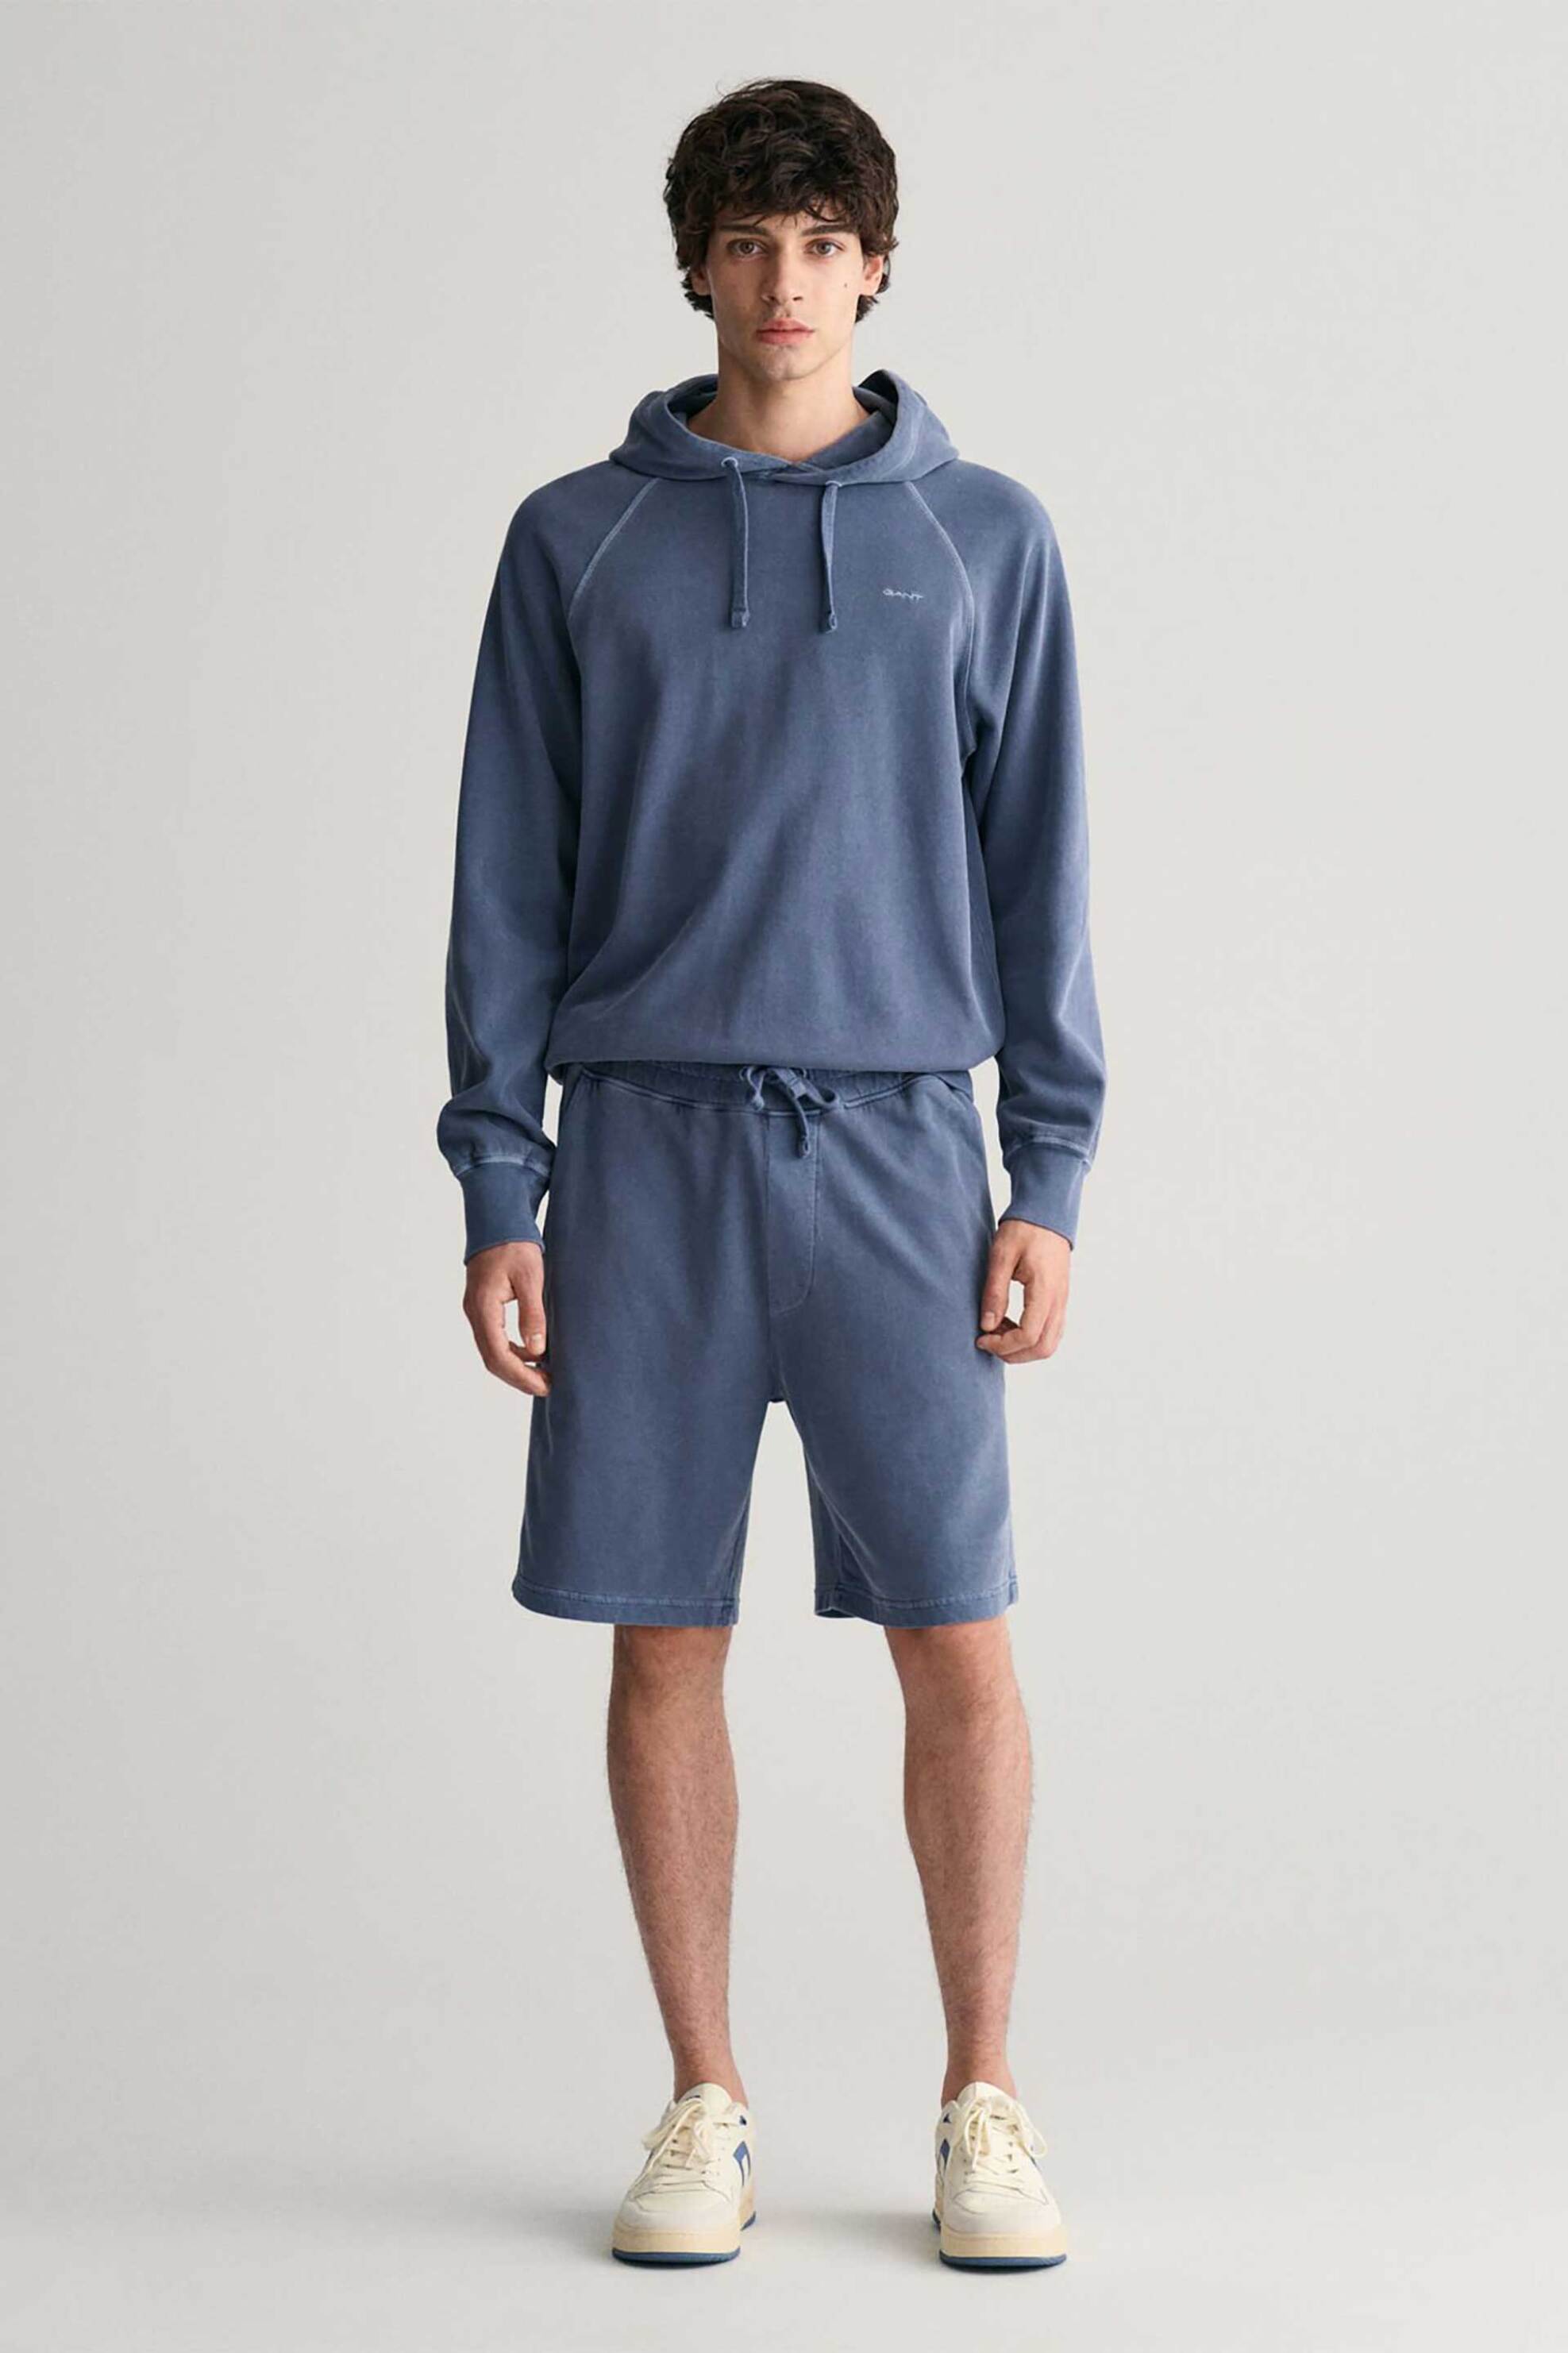 Ανδρική Μόδα > Ανδρικά Ρούχα > Ανδρικές Βερμούδες Gant ανδρική βερμούδα με ελαστική μέση Regular Fit - 2013021 Μπλε